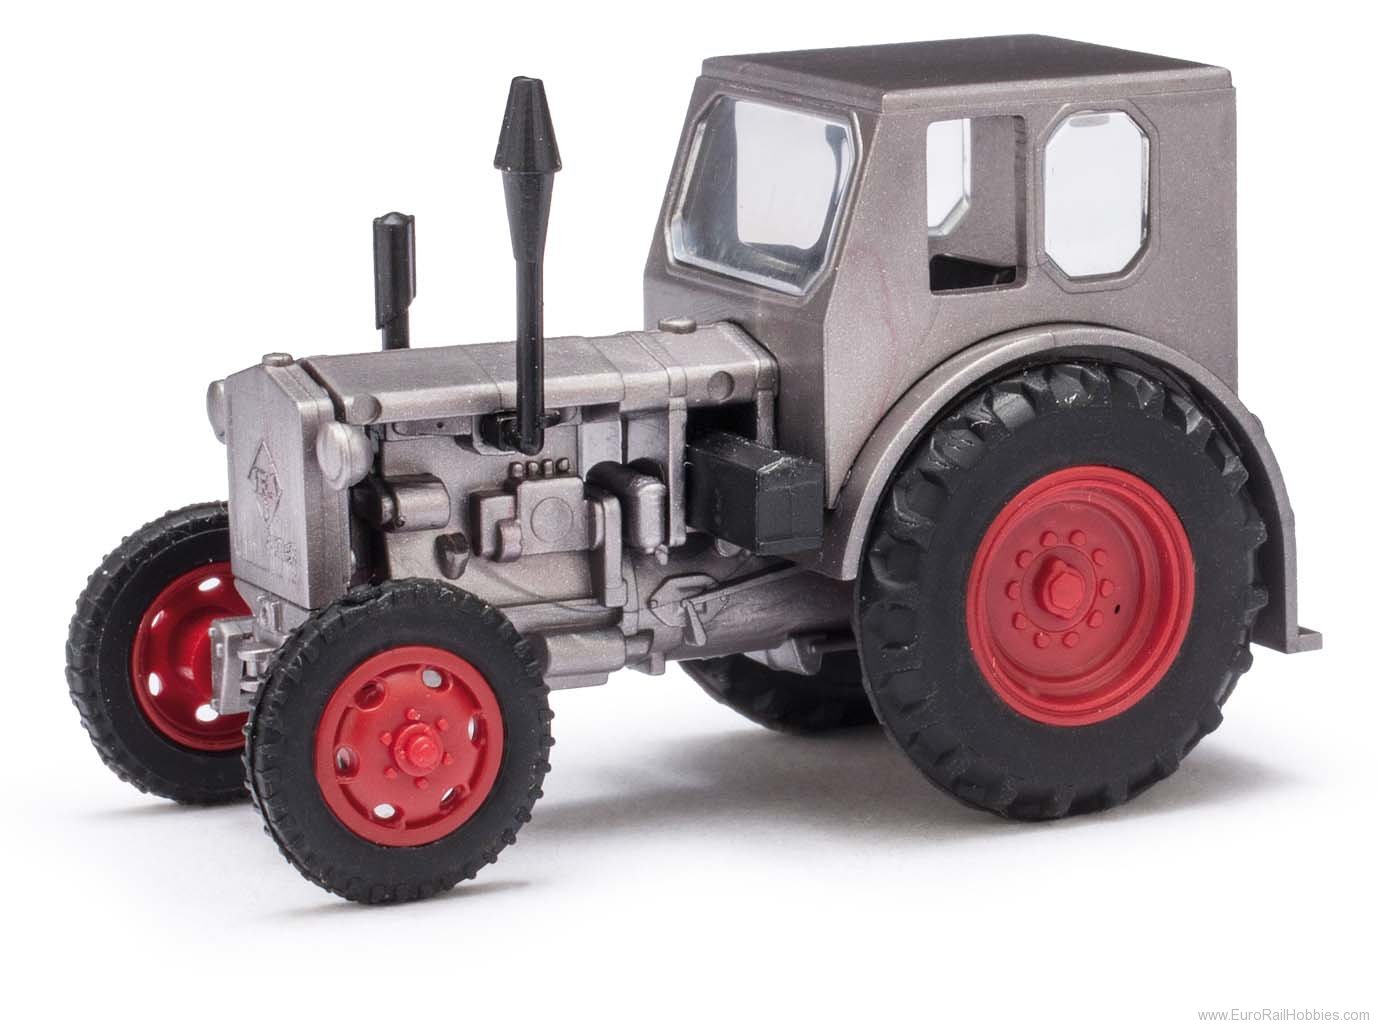 Busch 210006404 Mehlhose Traktor Pionier 1949 gra